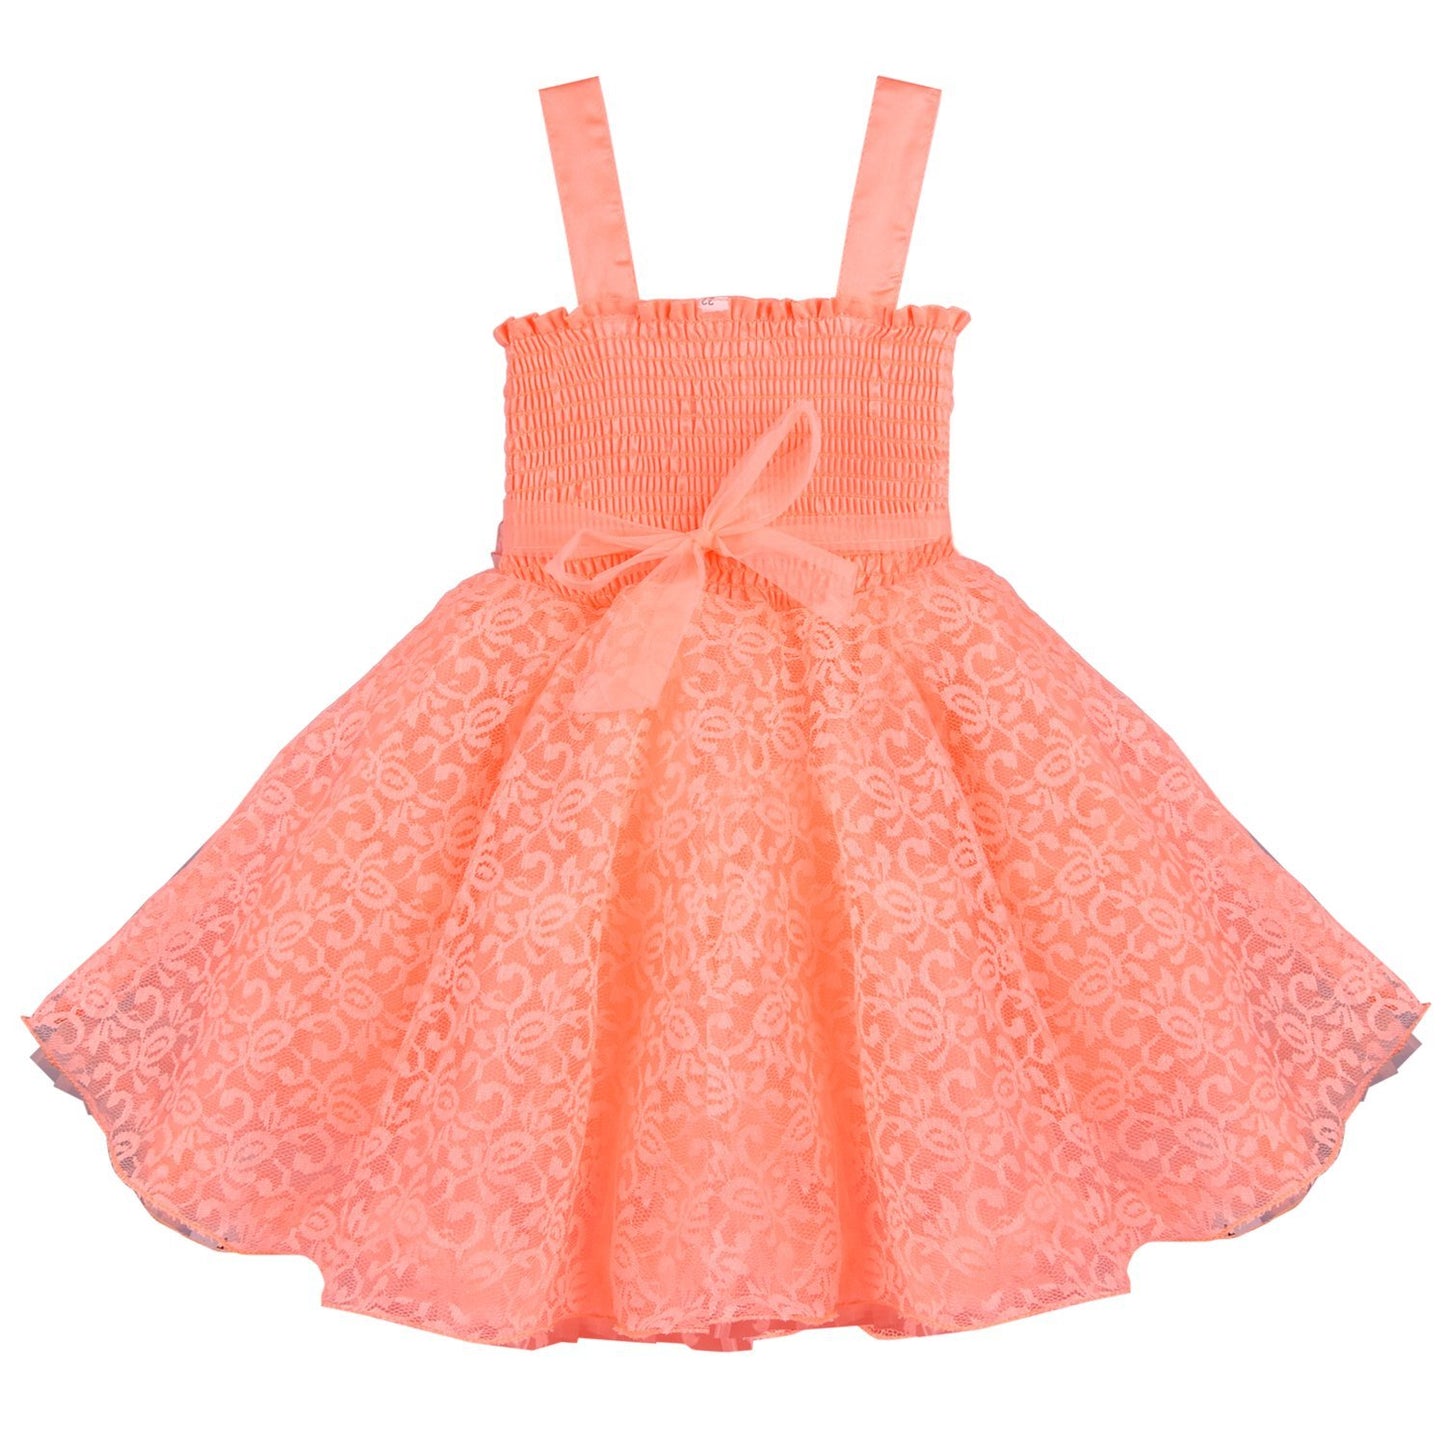 Baby Girls Party Wear Frock Dress DN fr1031pch - Wish Karo Party Wear - frocks Party Wear - baby dress